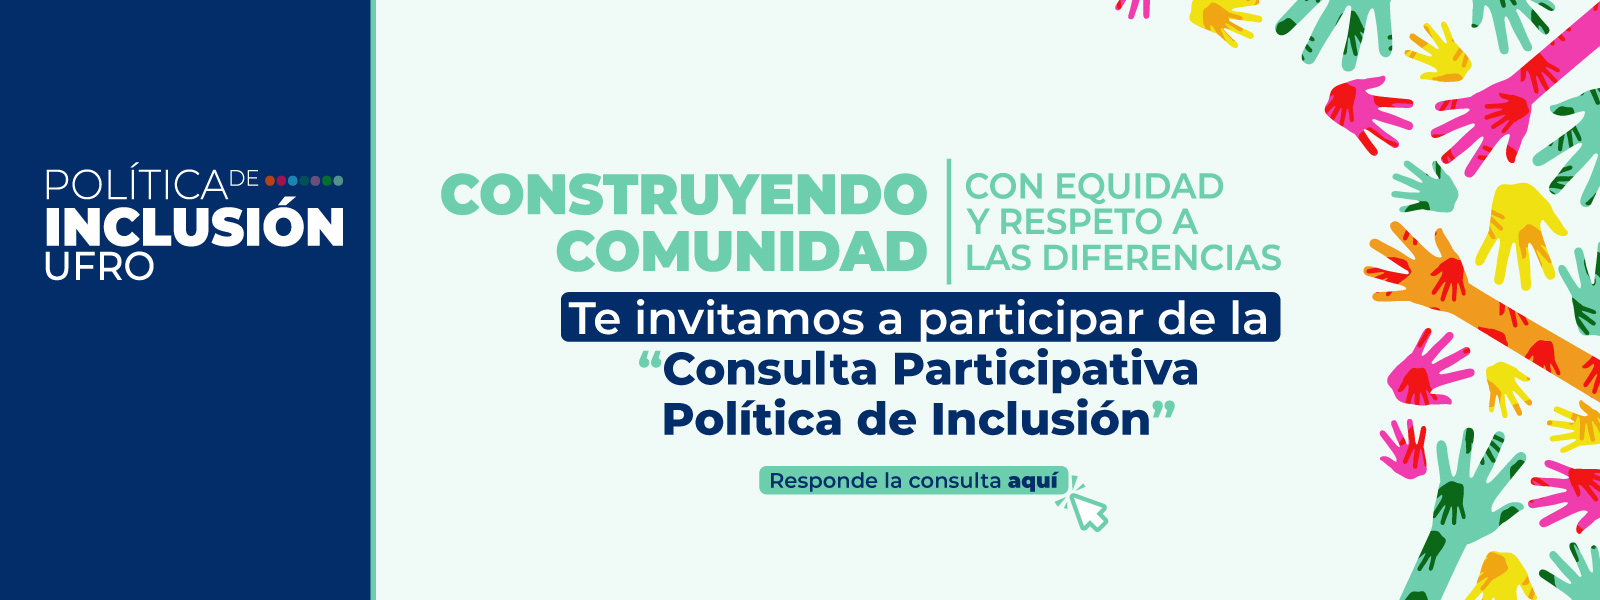 consulta politica inclusion